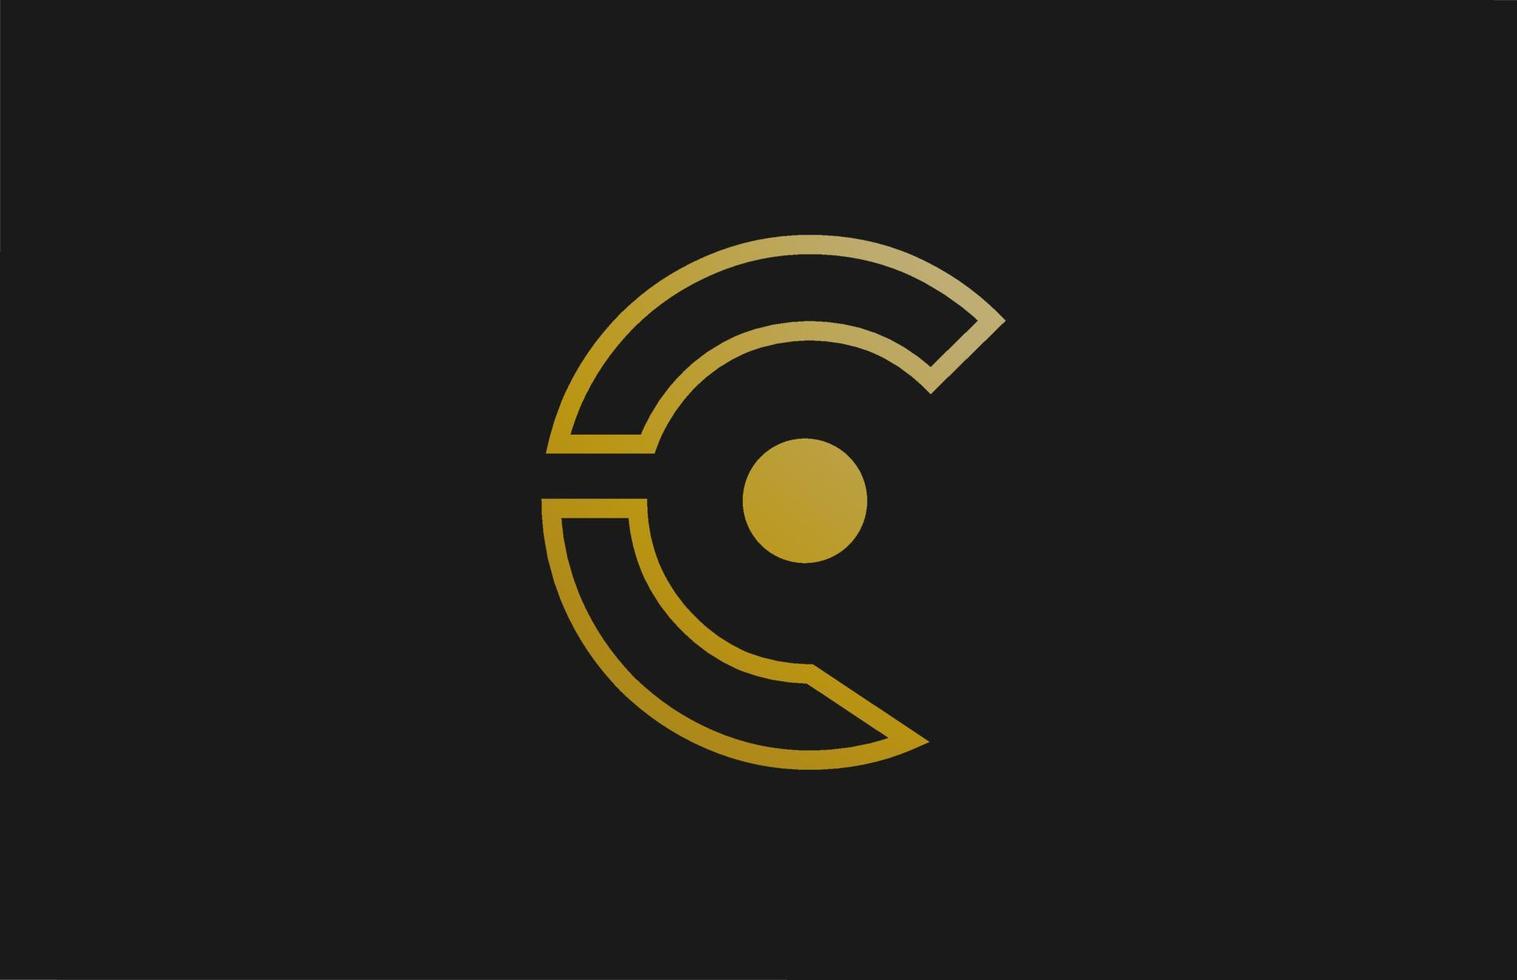 Gold goldene Linie c Alphabet Buchstaben Logo Design mit Kreissymbol für Unternehmen und Unternehmen vektor